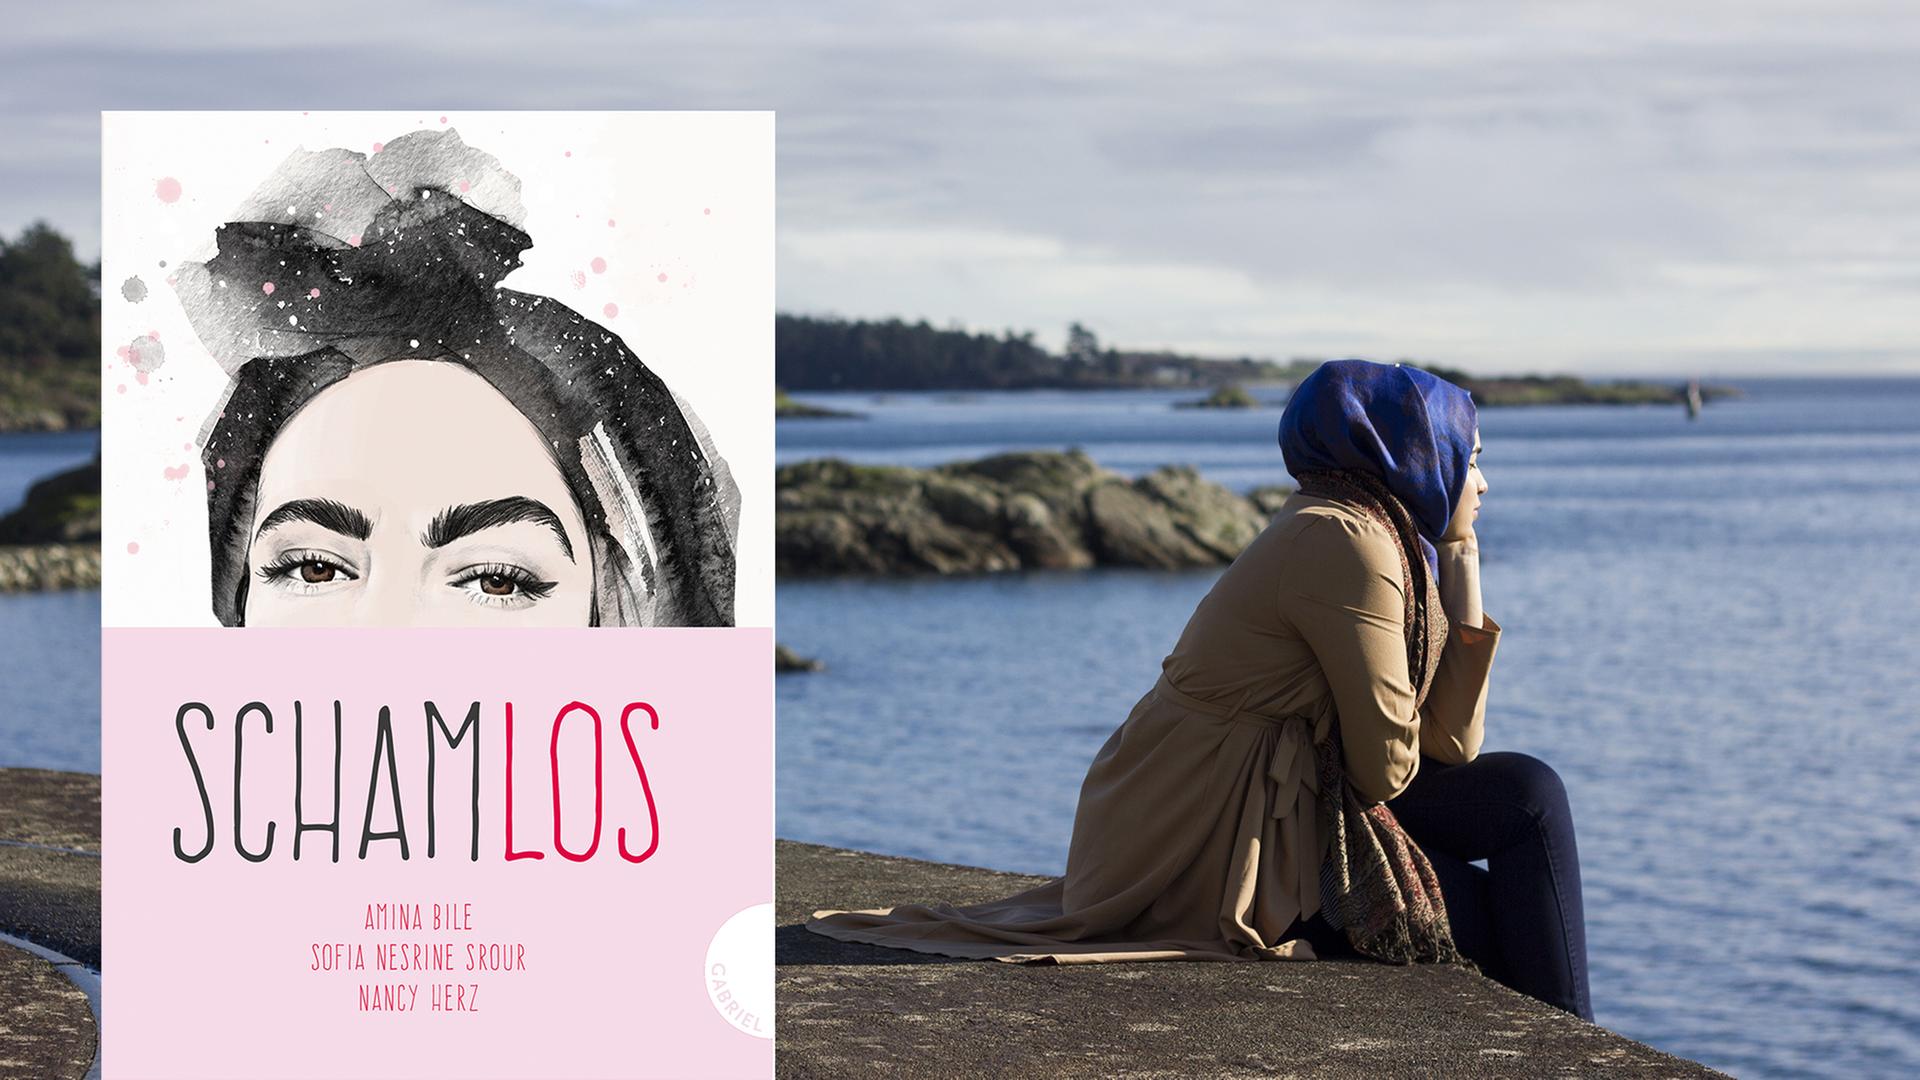 Im Vordergrund das Buchcover des Buchs "Schamlos", im Hintergrund eine junge Frau mit blauen Kopftuch, die am Wasser sitzt und auf das Meer schaut.